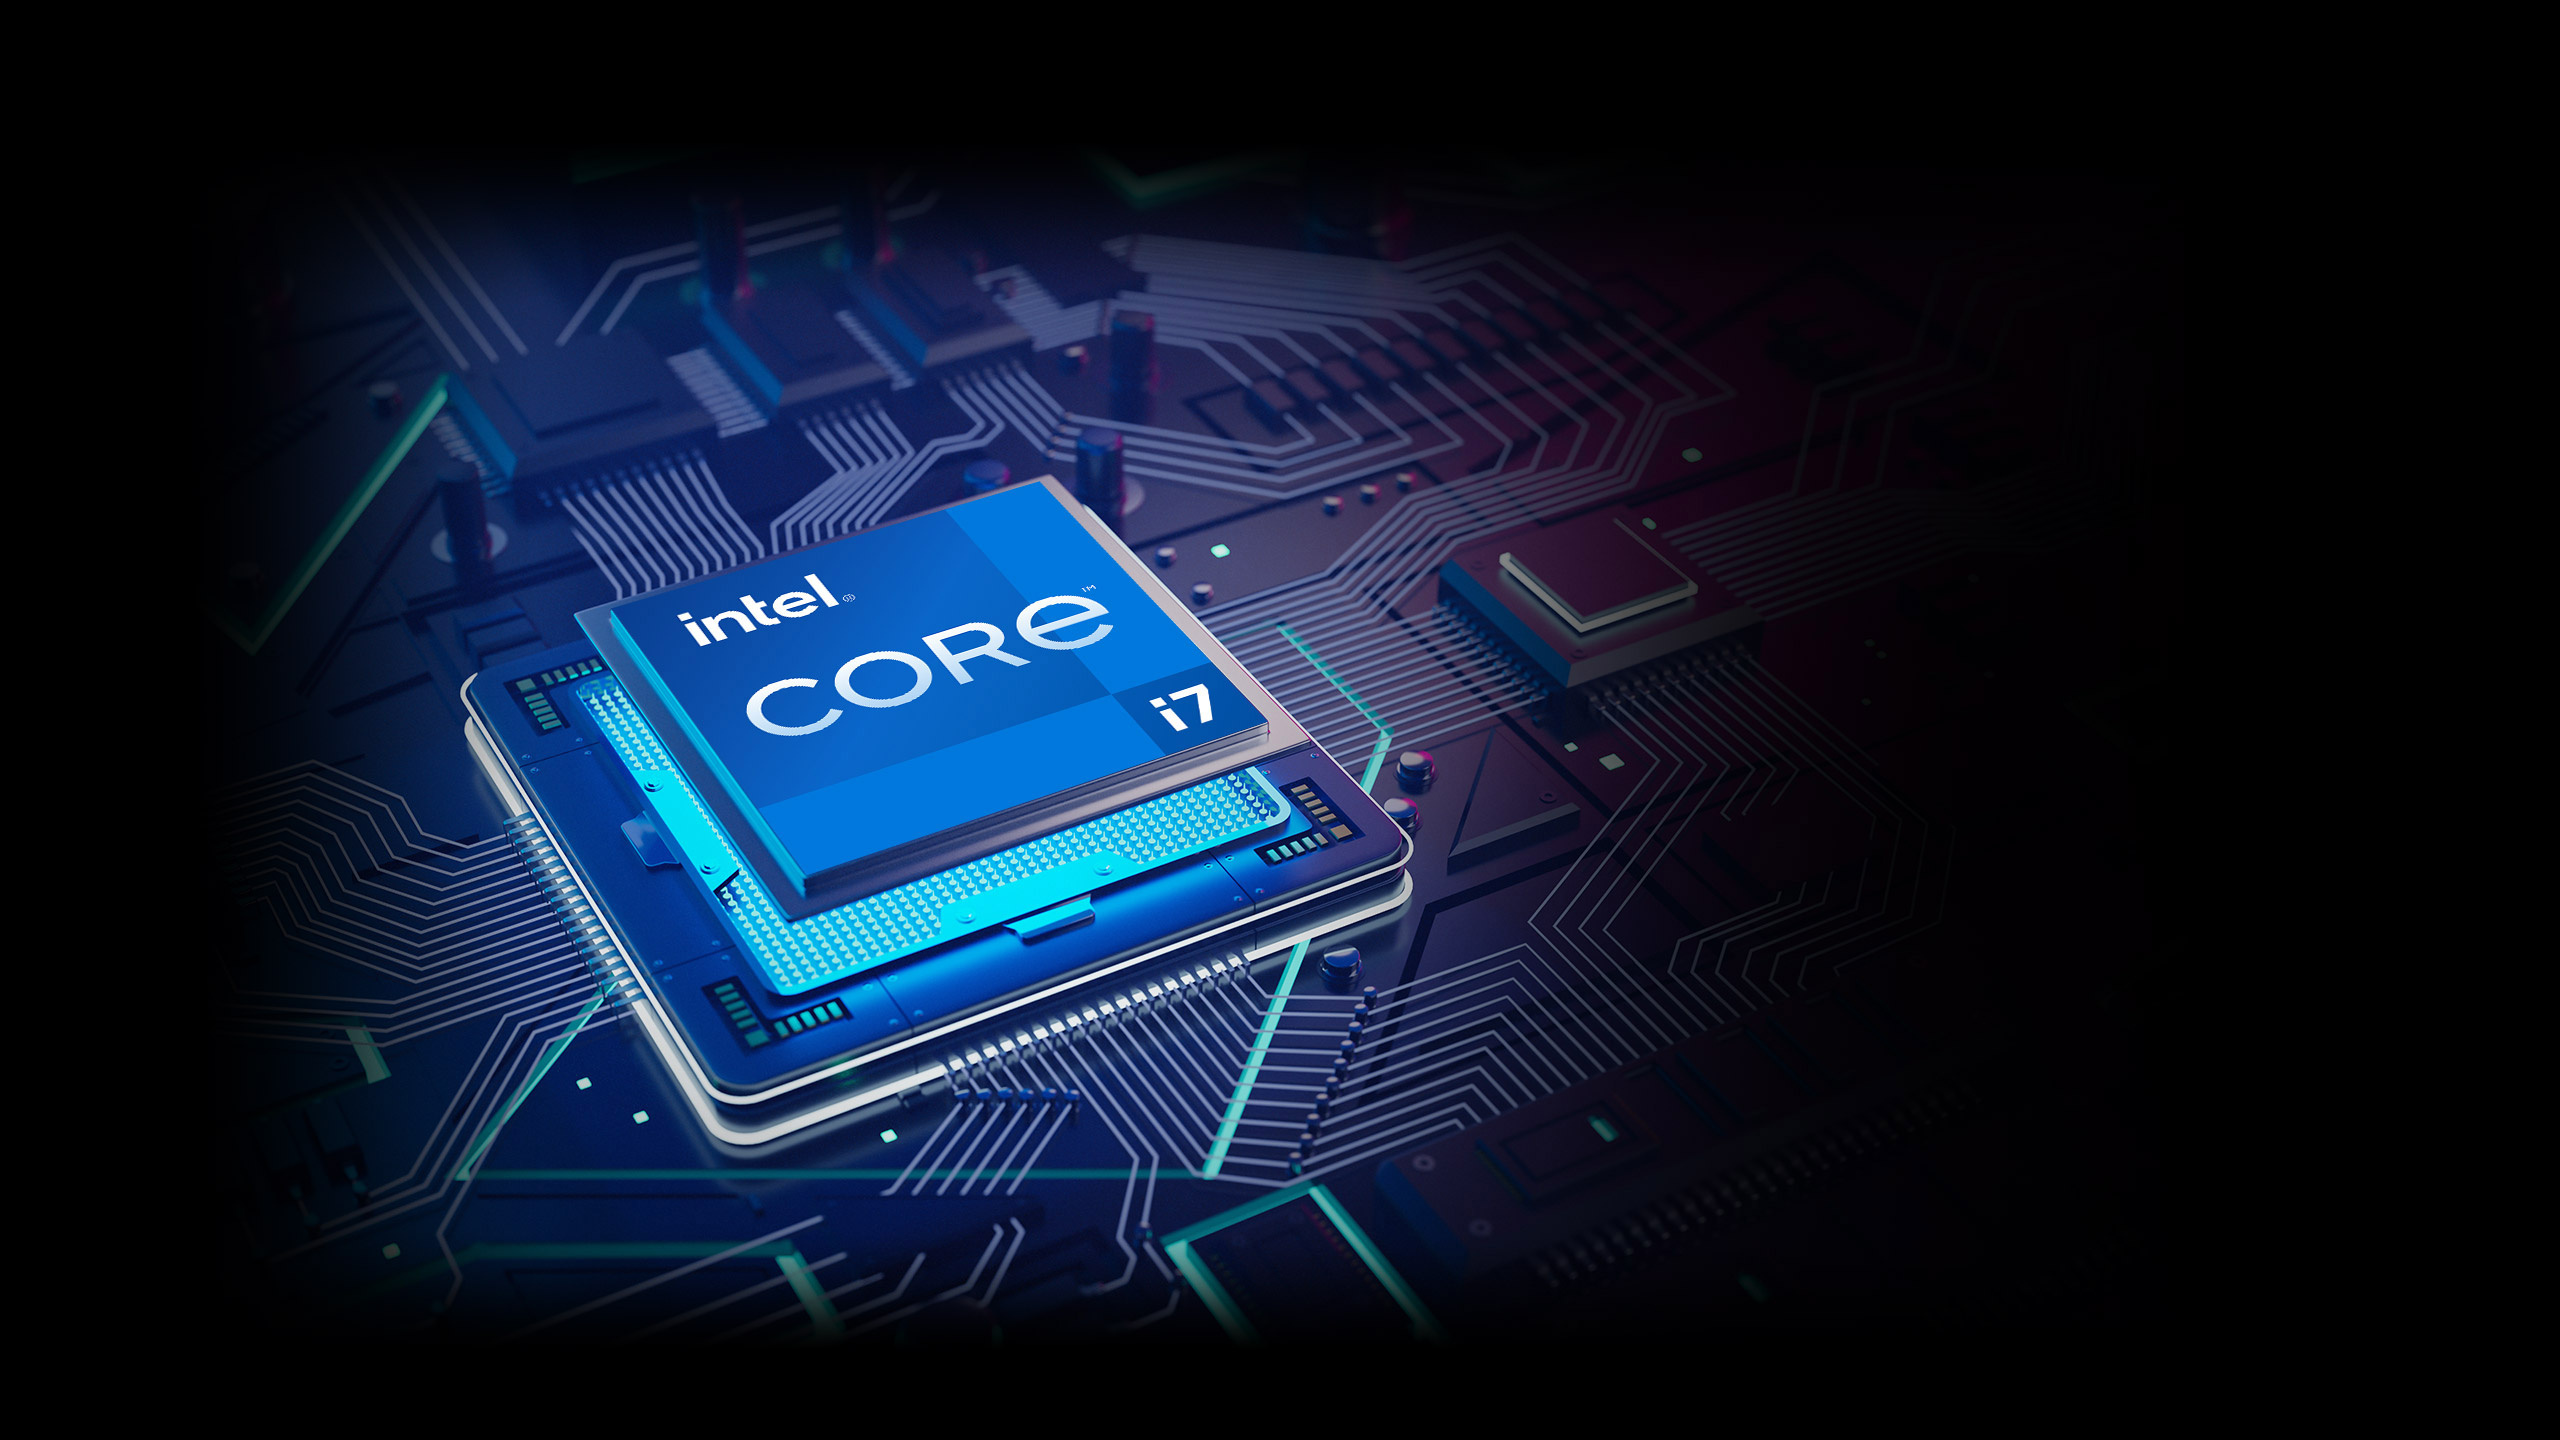 Core i7, Intel Wallpaper, 2560x1440 HD Desktop